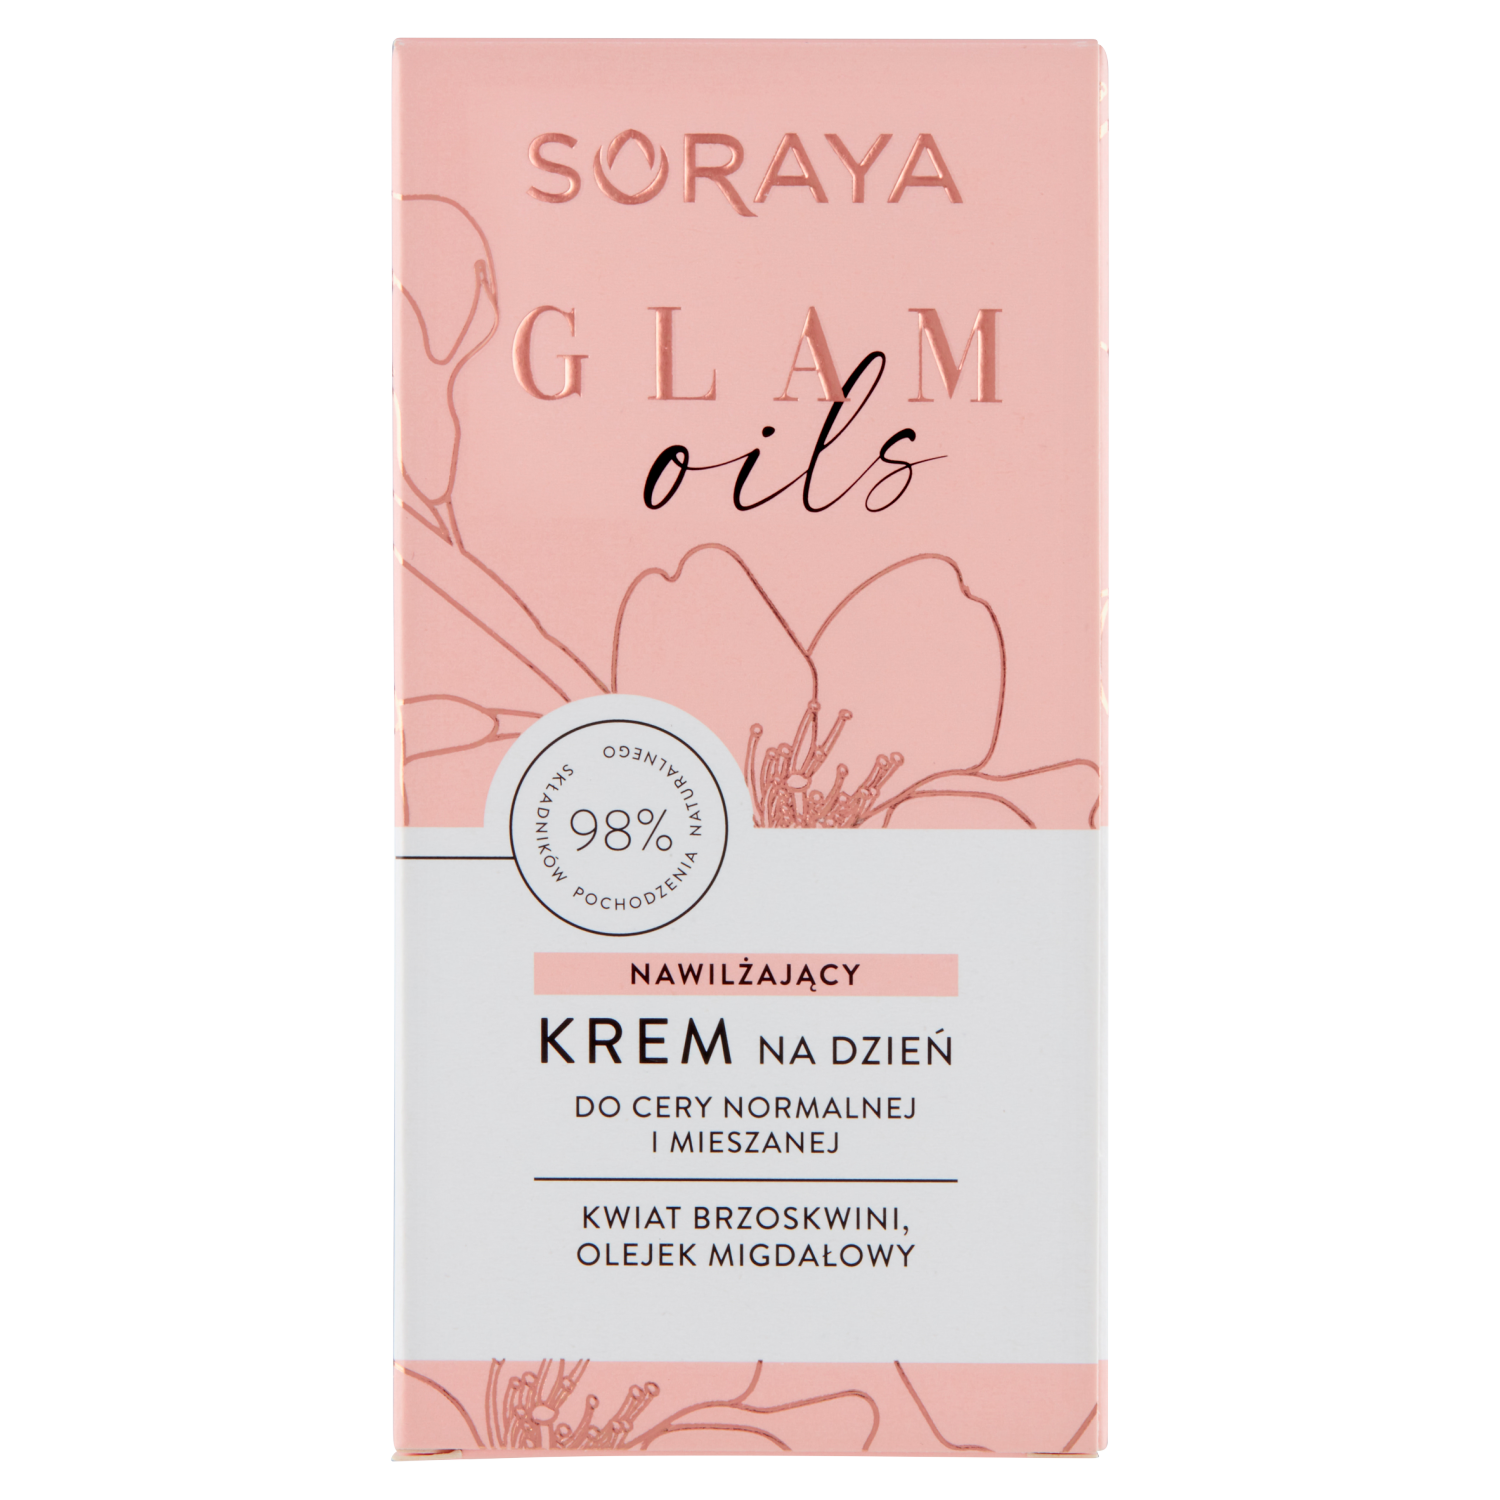 Soraya Glam Oils Увлажняющий дневной крем для лица, 50 мл цена и фото